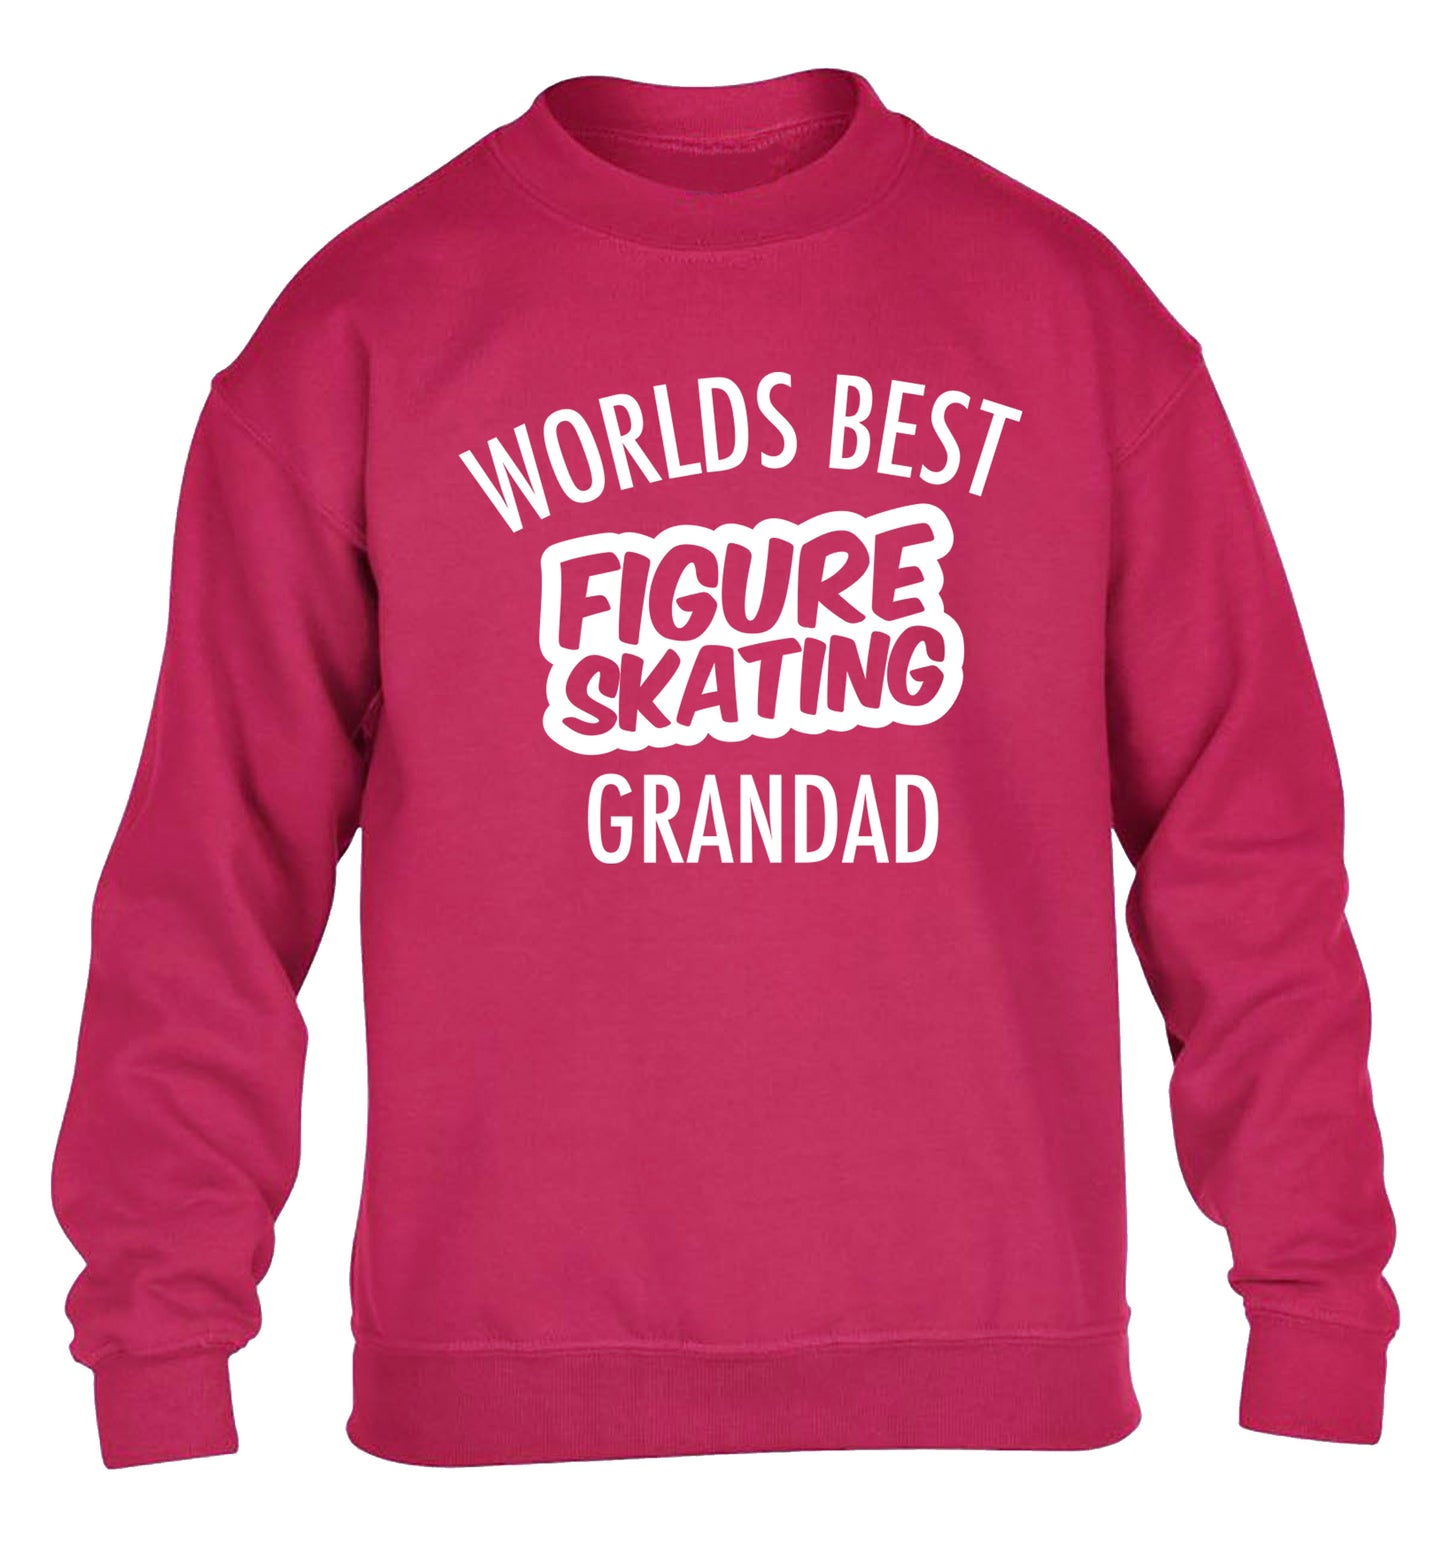 Worlds best figure skating grandad children's pink sweater 12-14 Years